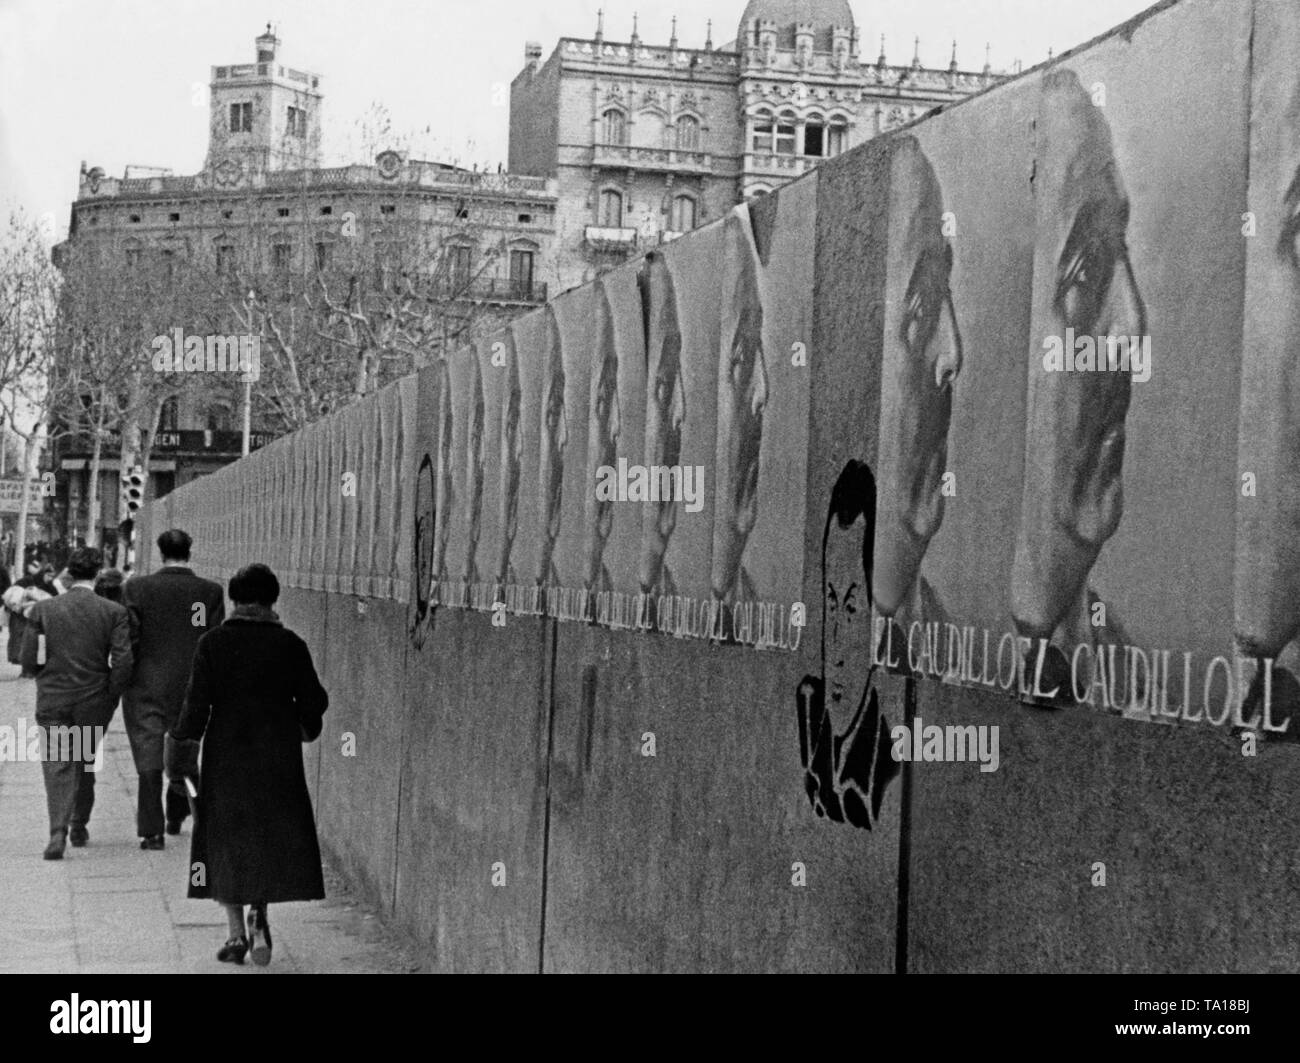 Une rangée d'affiches de propagande du Général Francisco Franco (Real) dans le centre de Barcelone, en février / mars 1939 peu avant la fin de la guerre civile. Banque D'Images